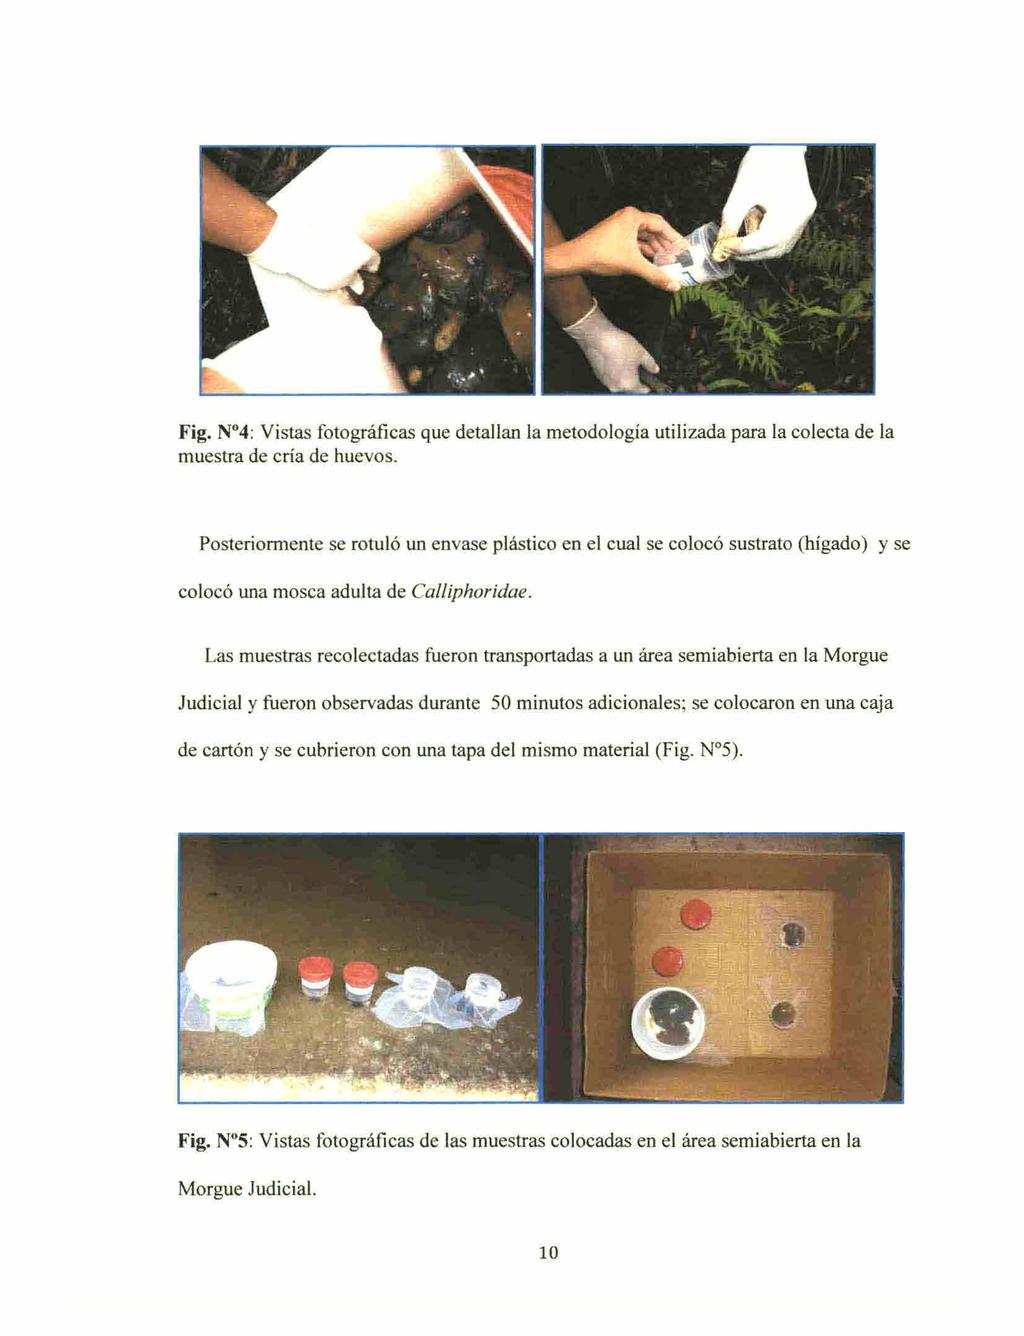 Fig. N 4: Vistas fotográficas que detallan la metodología utilizada para la colecta de la muestra de cría de huevos.